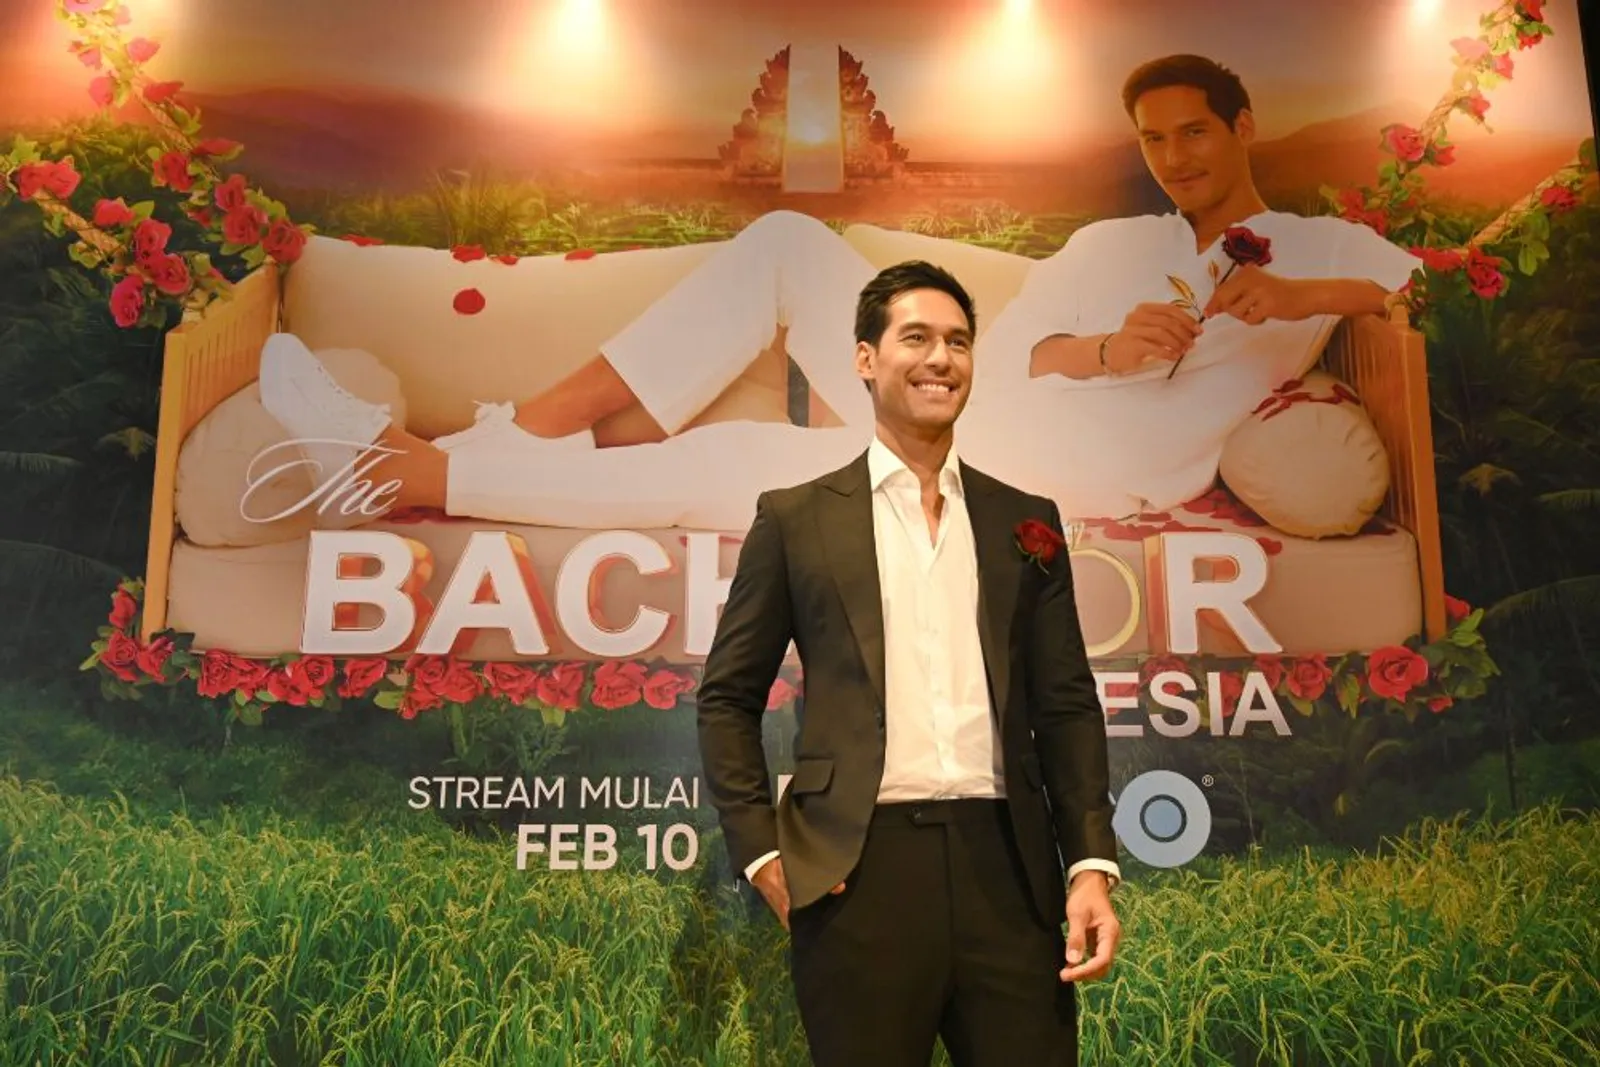 Ini Rasanya Nge-date Bareng The Bachelor Indonesia, Richard Kyle